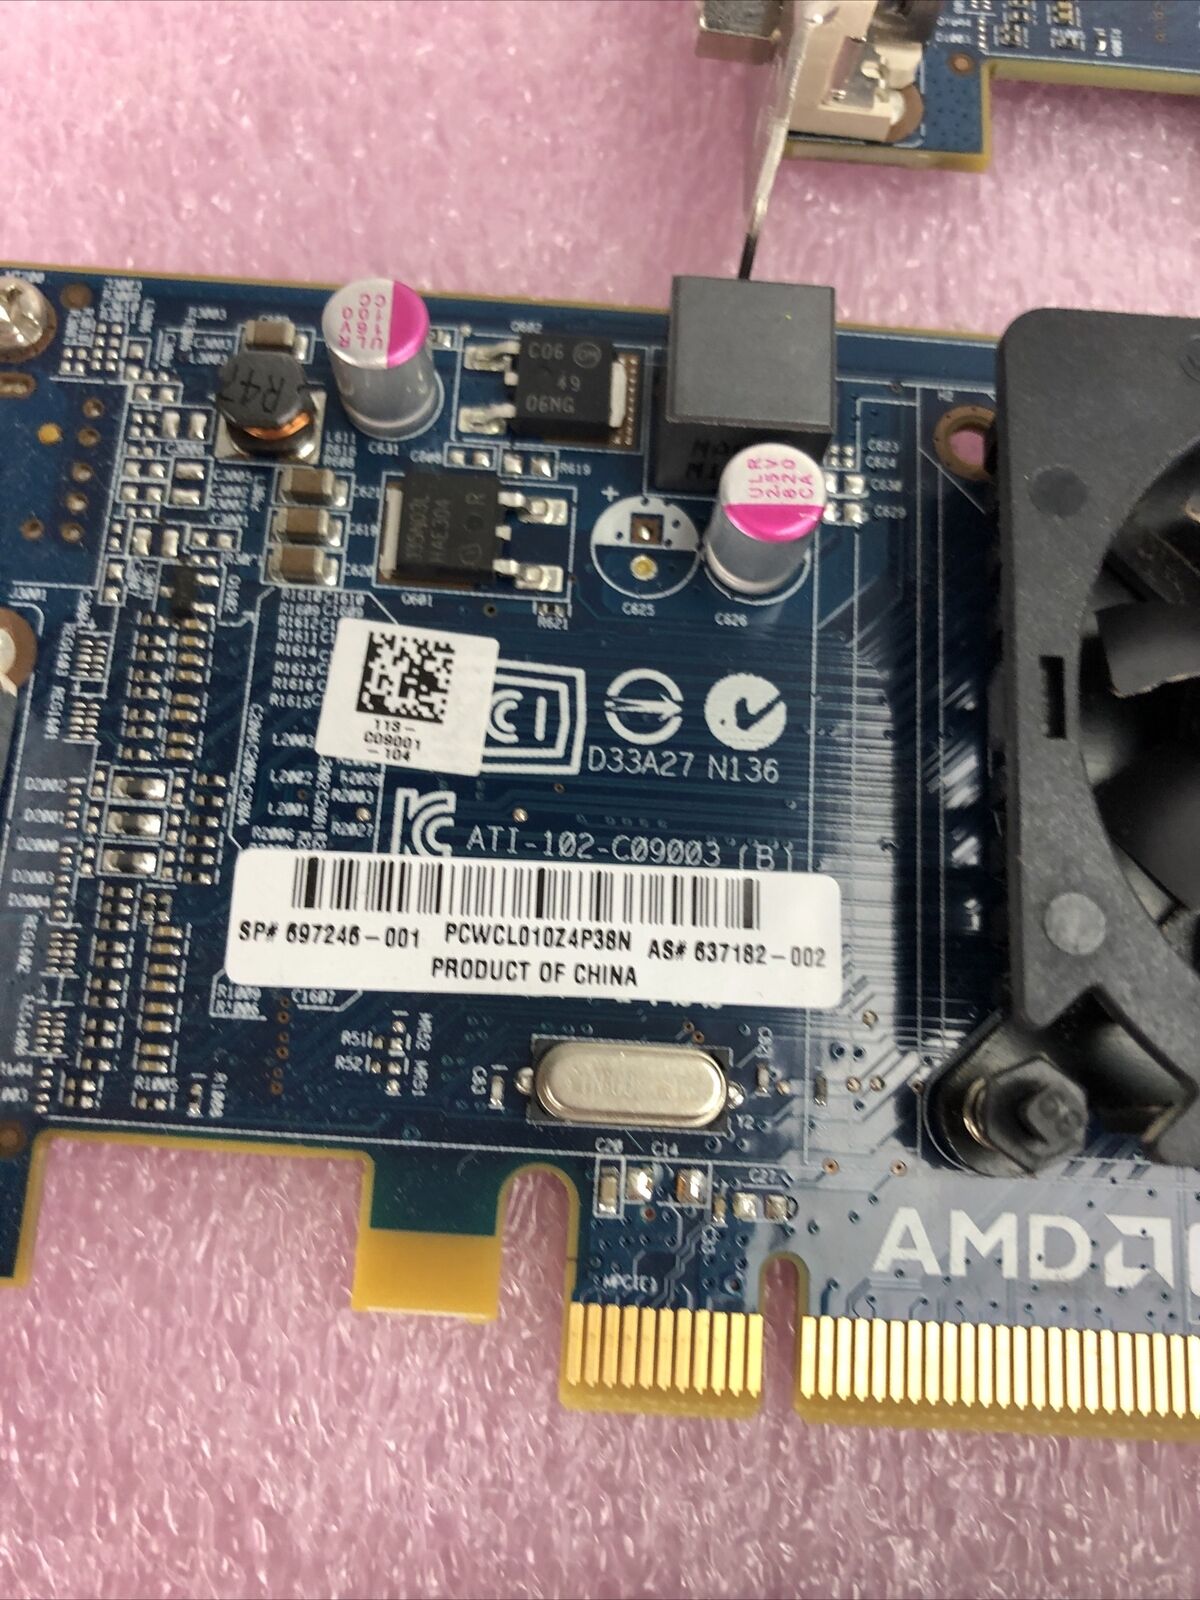 Lot of 5 AMD Radeon ATI-102-C26405 1GB PCI-e DDR3 Video Graphics Card